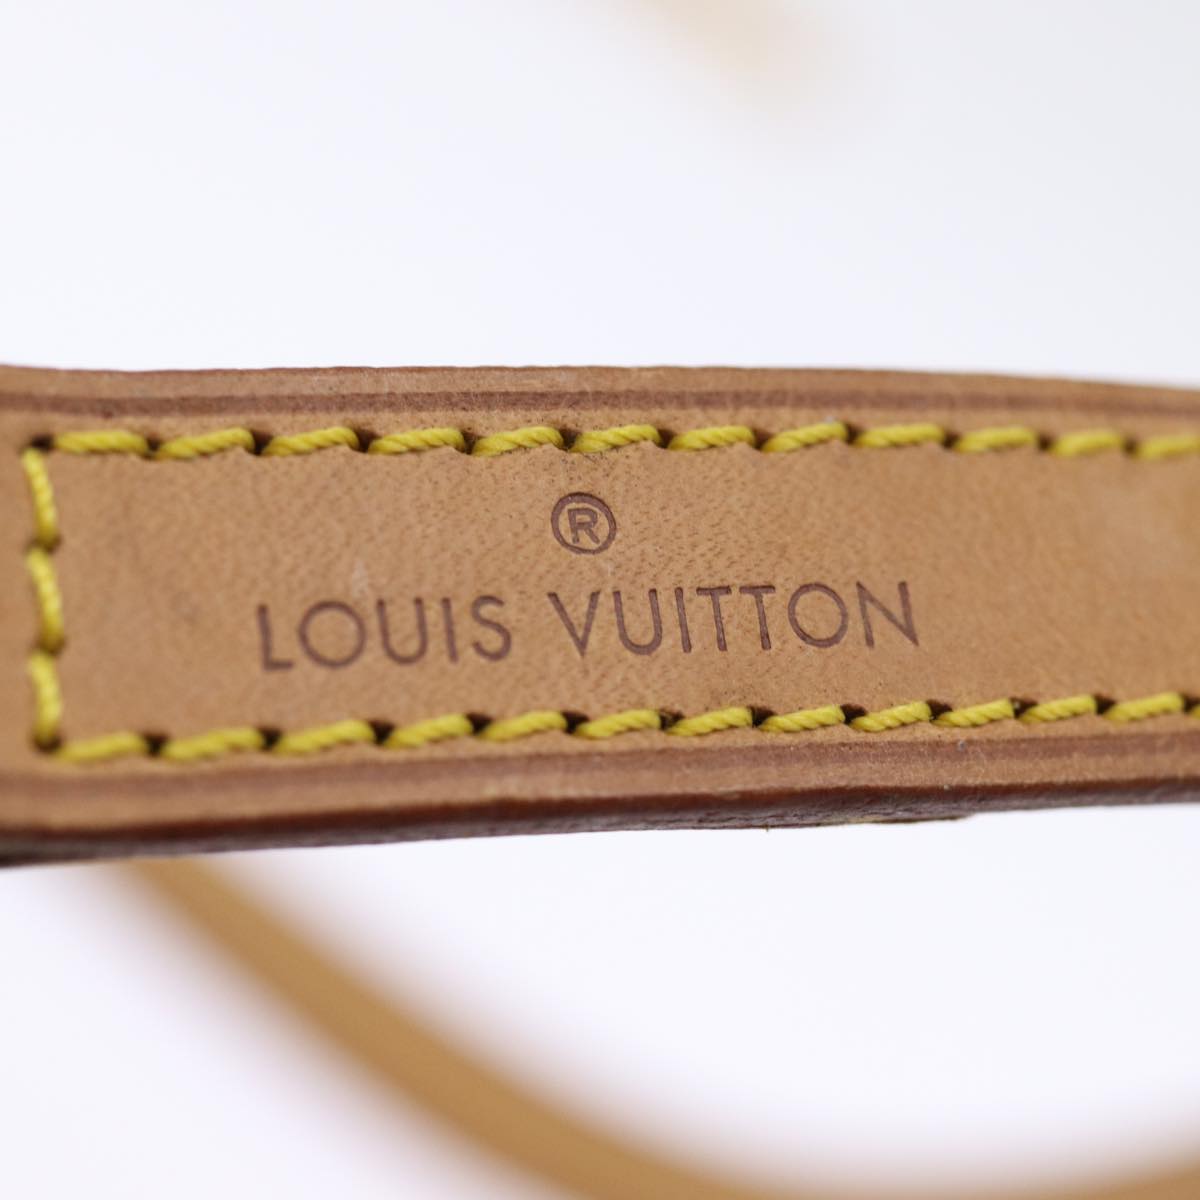 LOUIS VUITTON Shoulder Strap Leather 35.8"" Beige LV Auth 74488